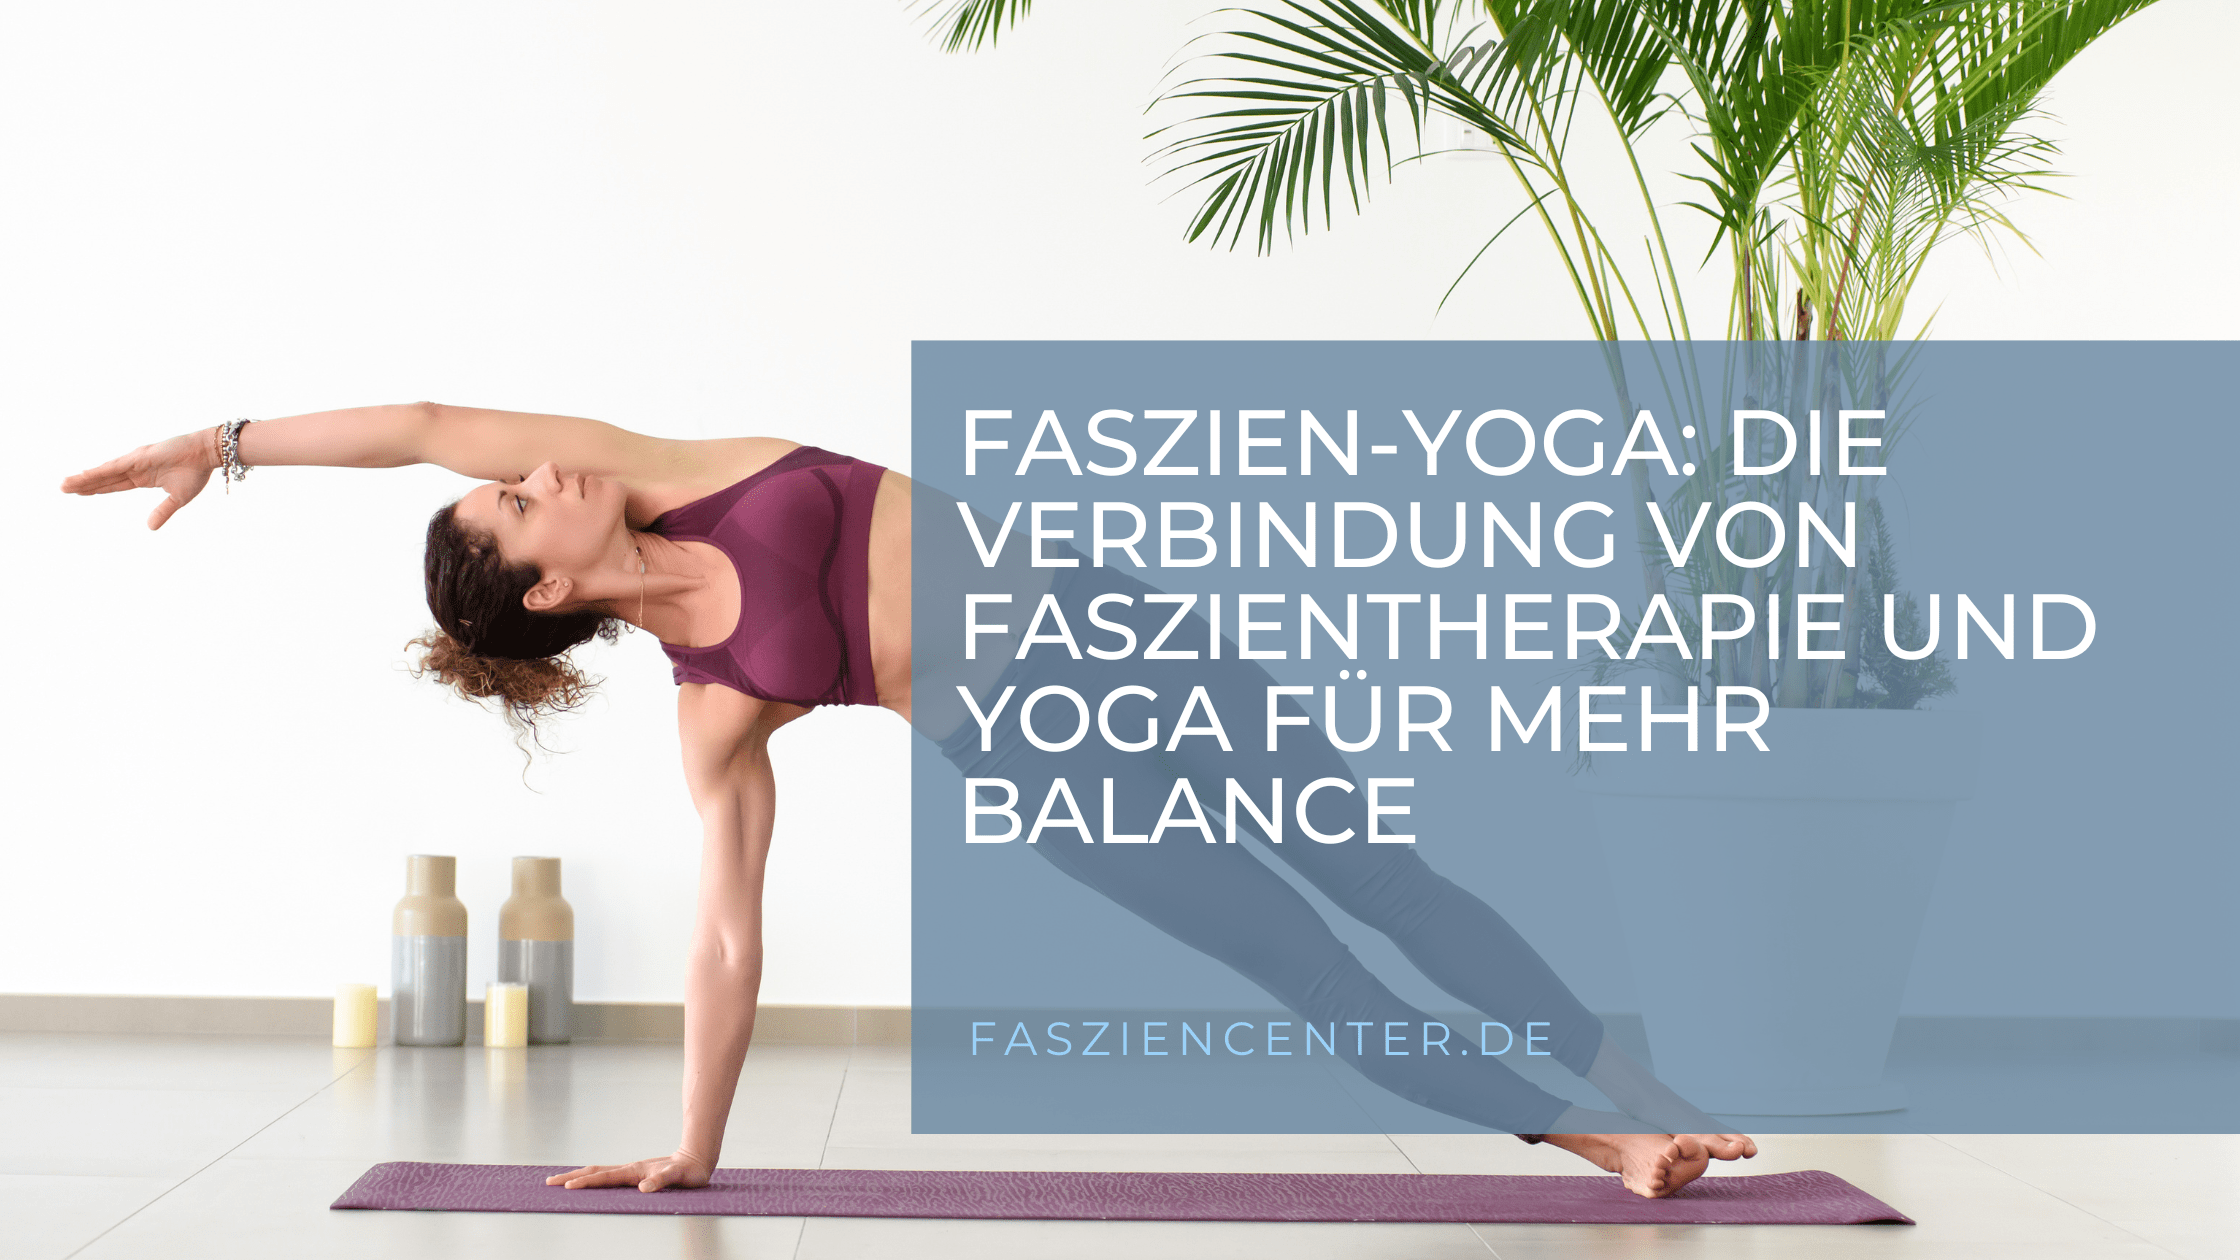 Eine Frau führt im Seitstütz eine Yogaübung aus, wobei sie ihren Körper kraftvoll ausbalanciert und konzentriert auf ihre Atmung achtet.